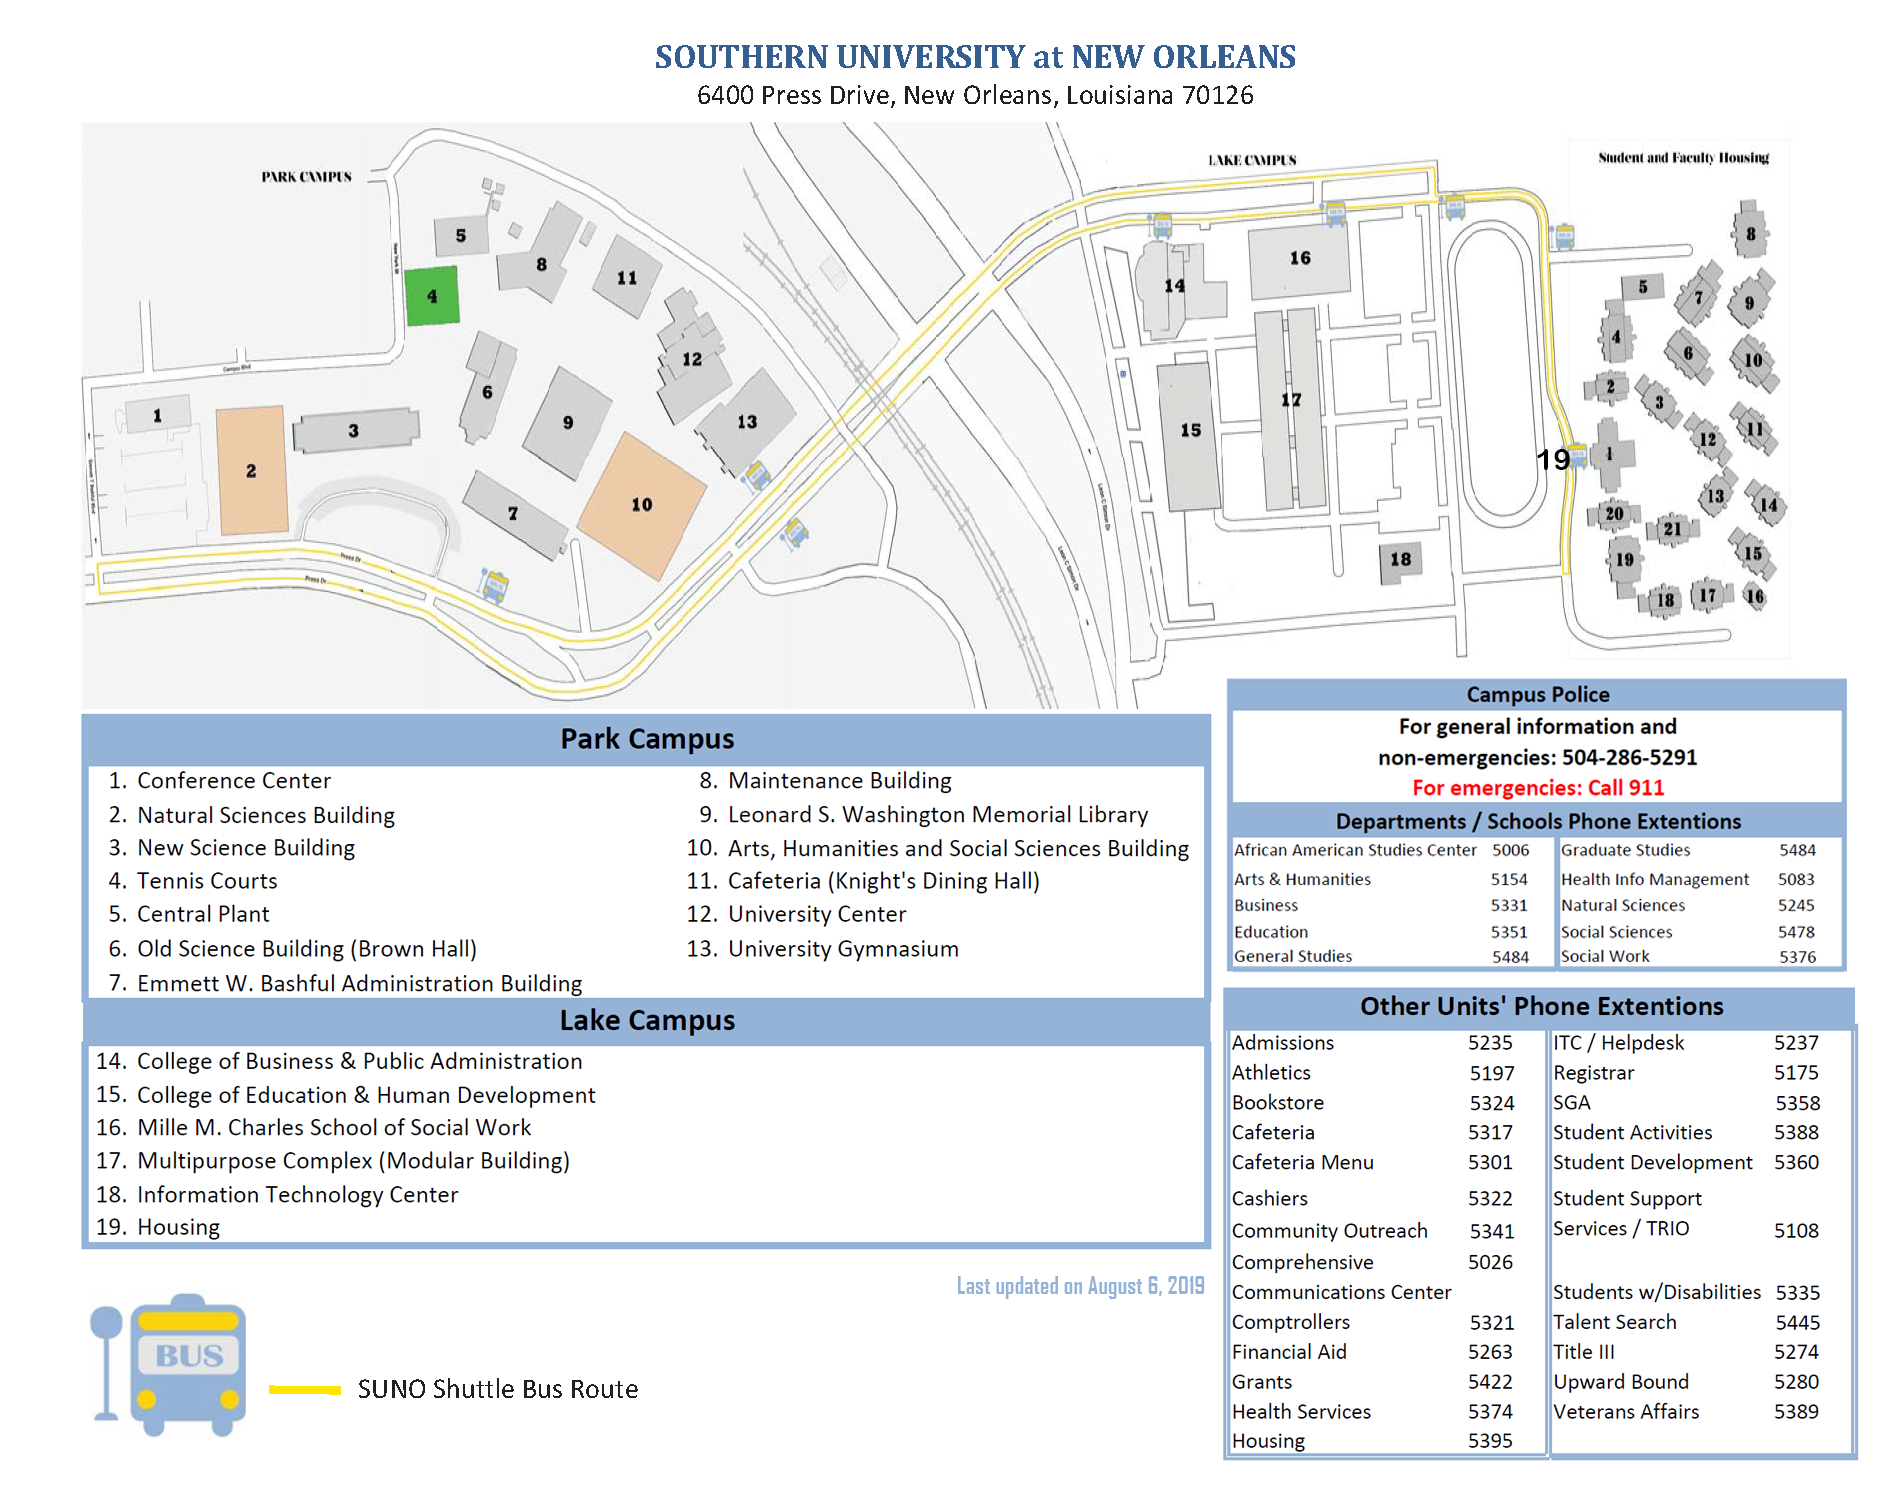 Campus Map of SUNO